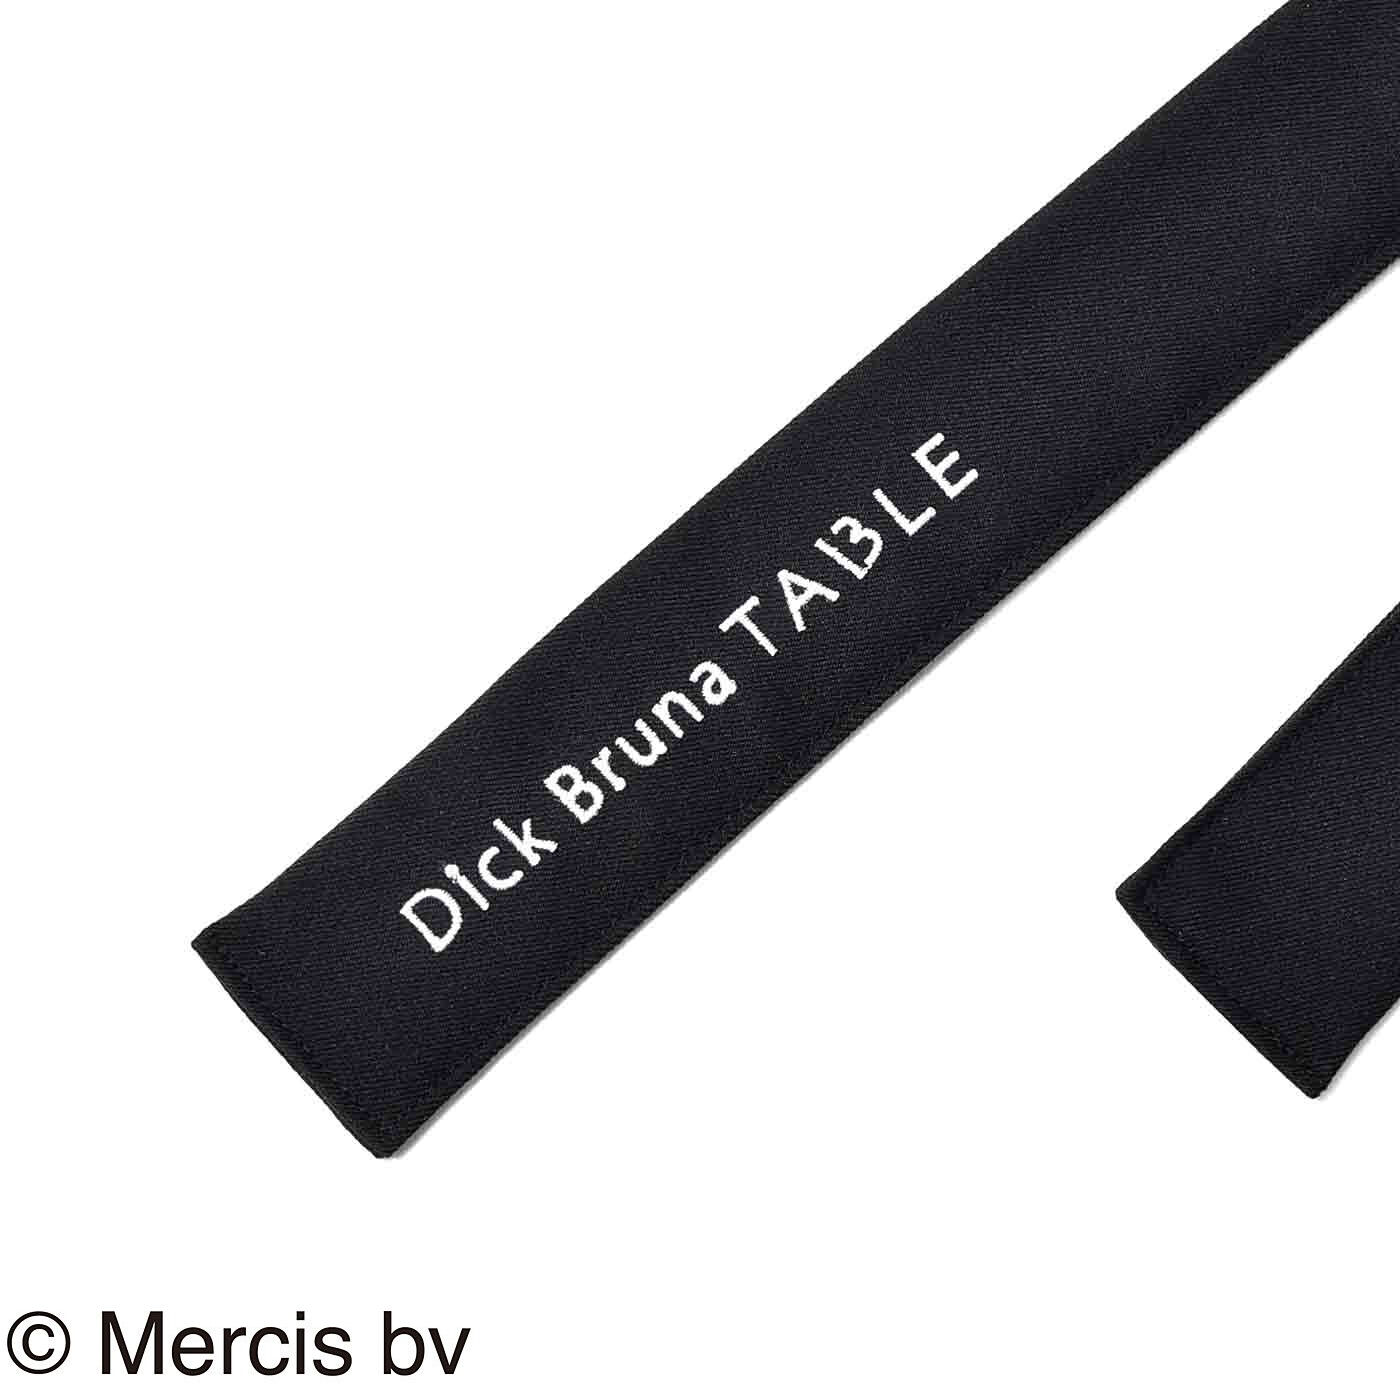 ディック・ブルーナ テーブル|Dick Bruna TABLE  ソムリエエプロン〈ブラック〉|腰ひもの先に、Dick Bruna TABLEの刺しゅう入り